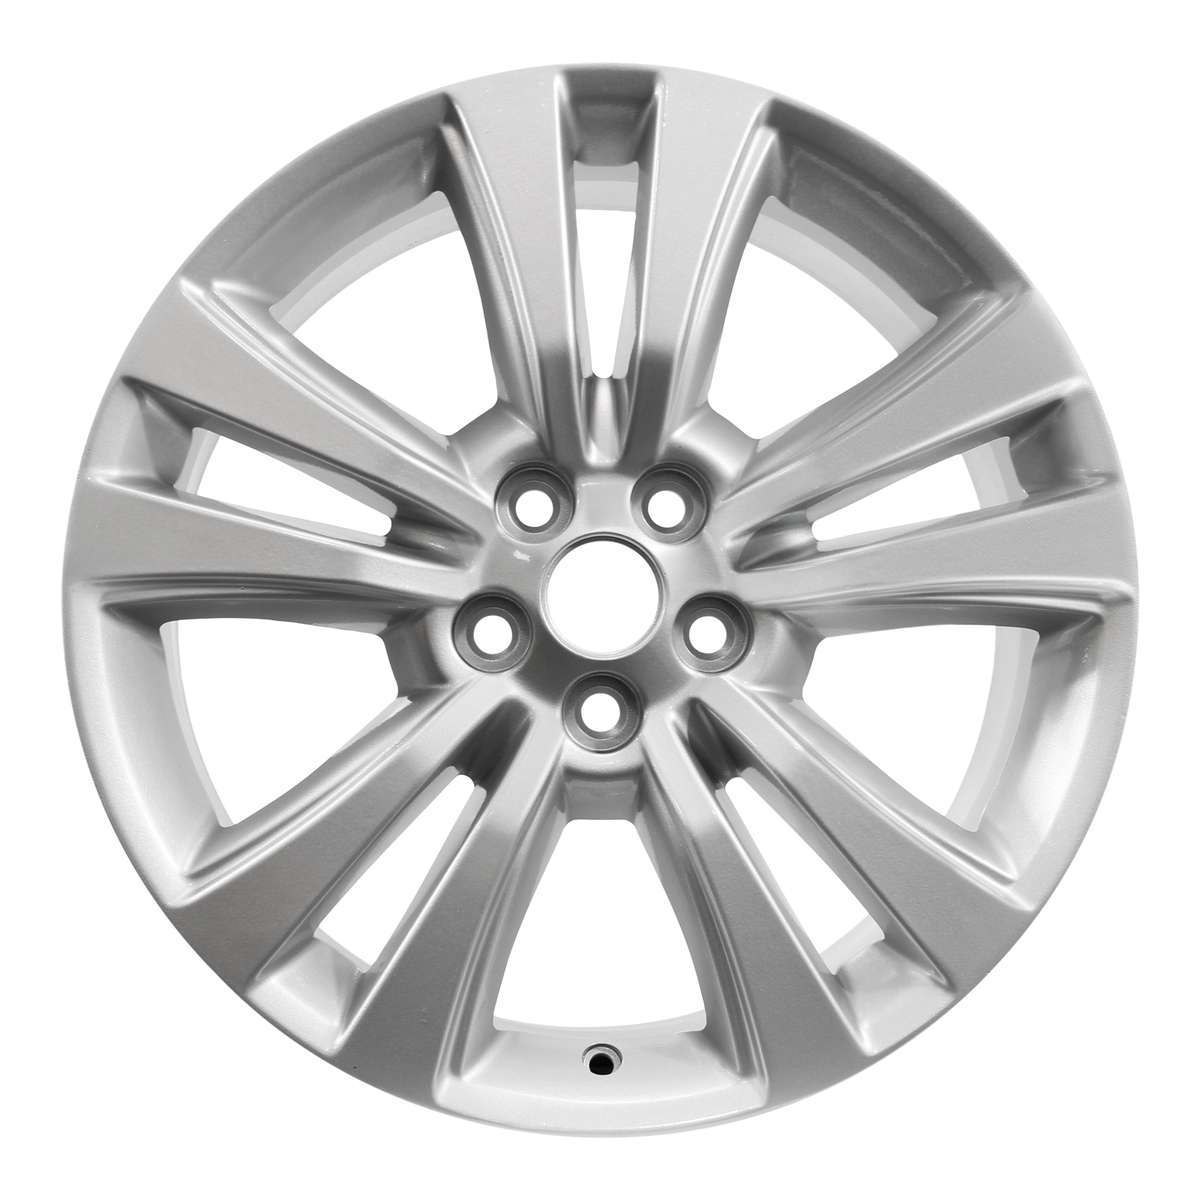 2016 Lincoln MKX 18" OEM Wheel Rim W10071S